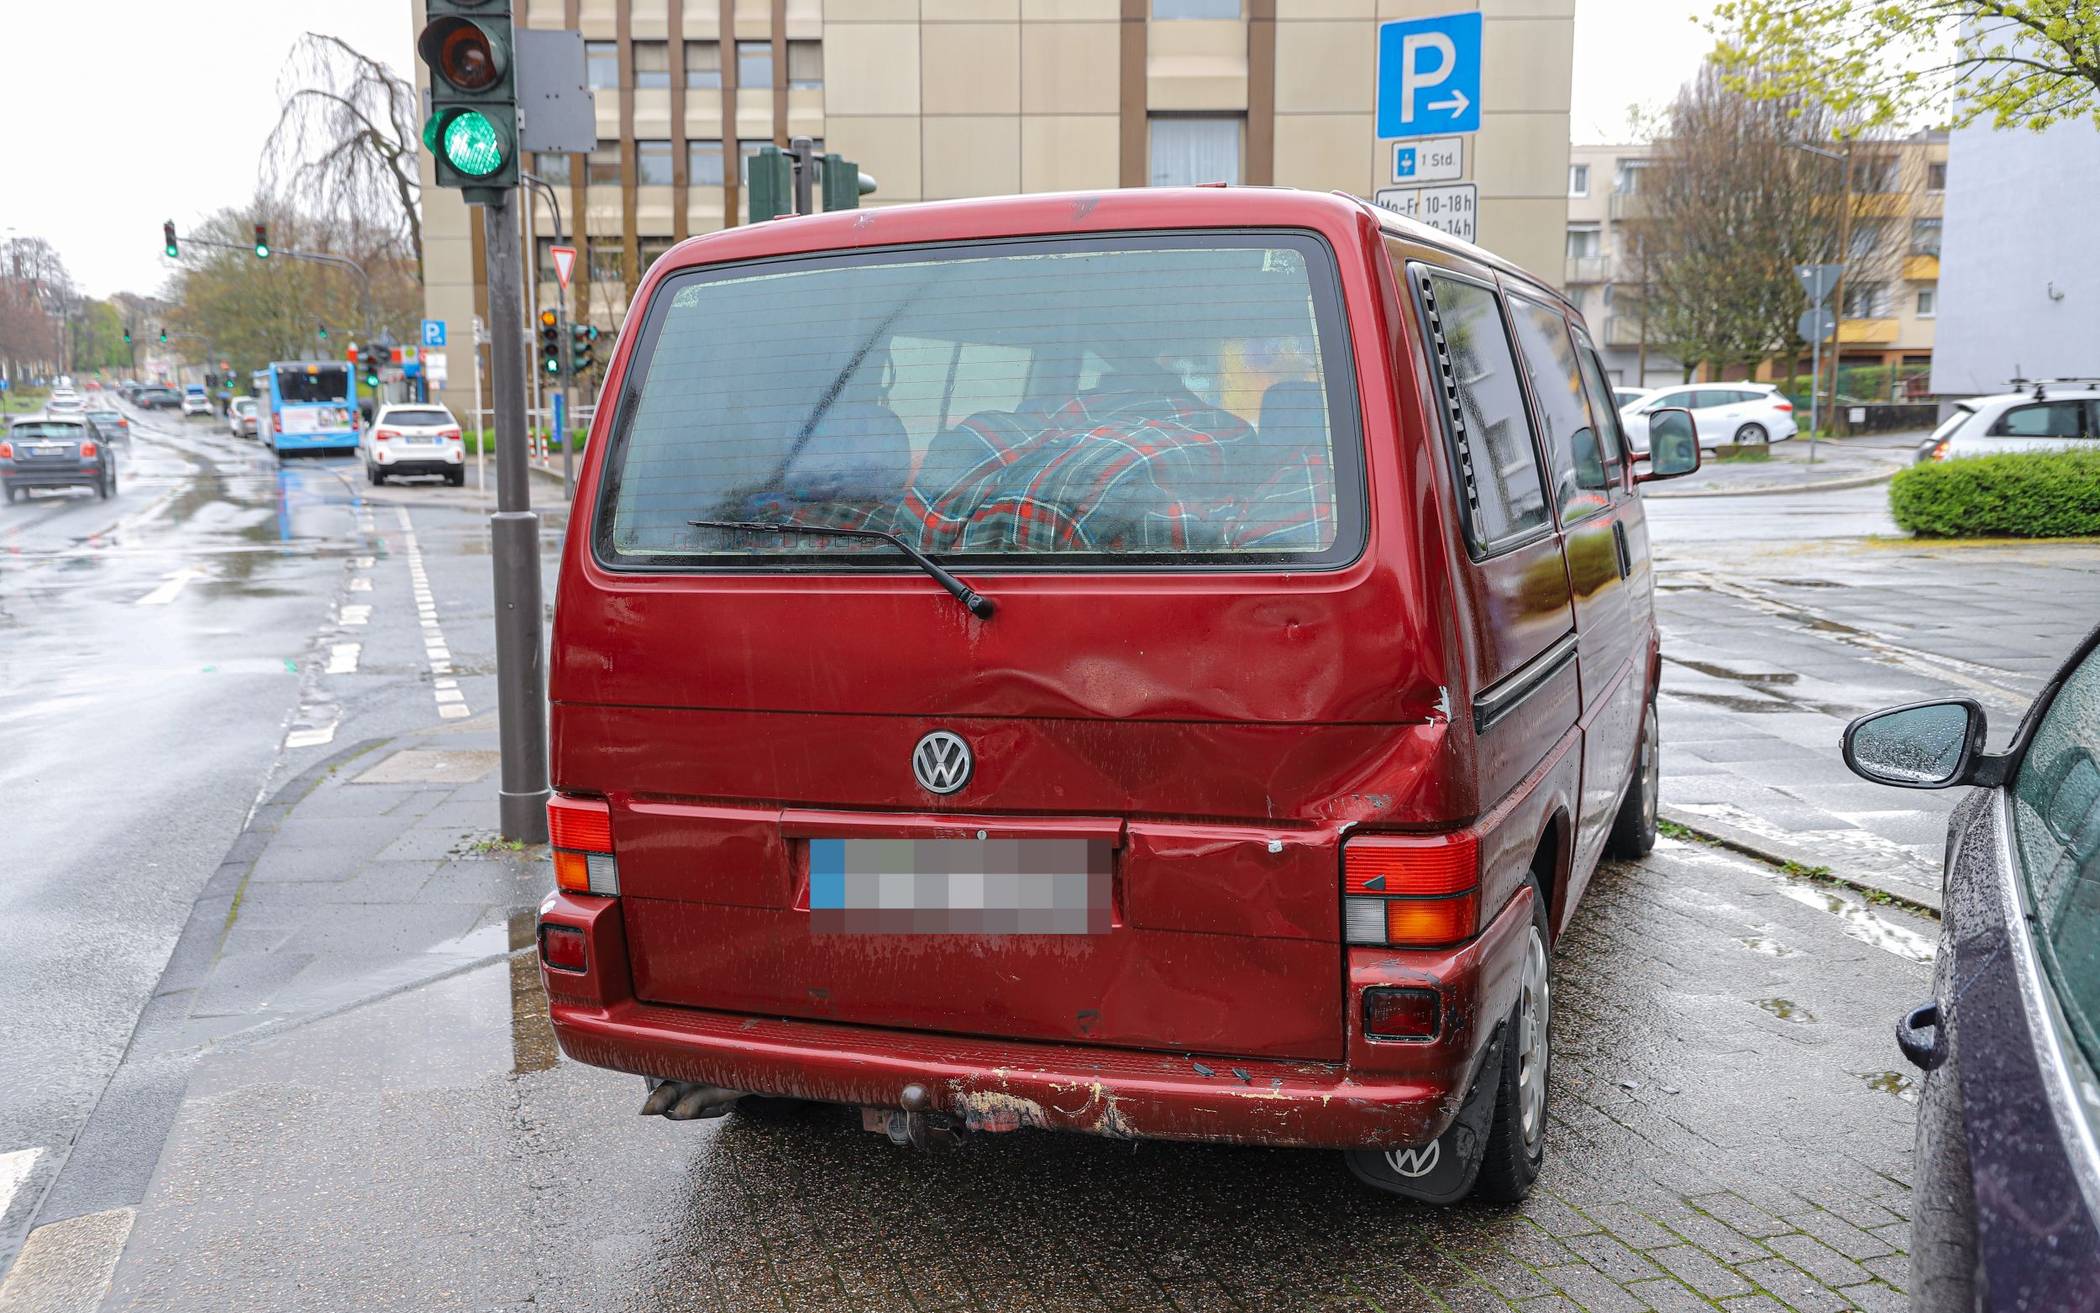 Bilder: Unfall in Wuppertal mit Rettungswagen und VW Bully​